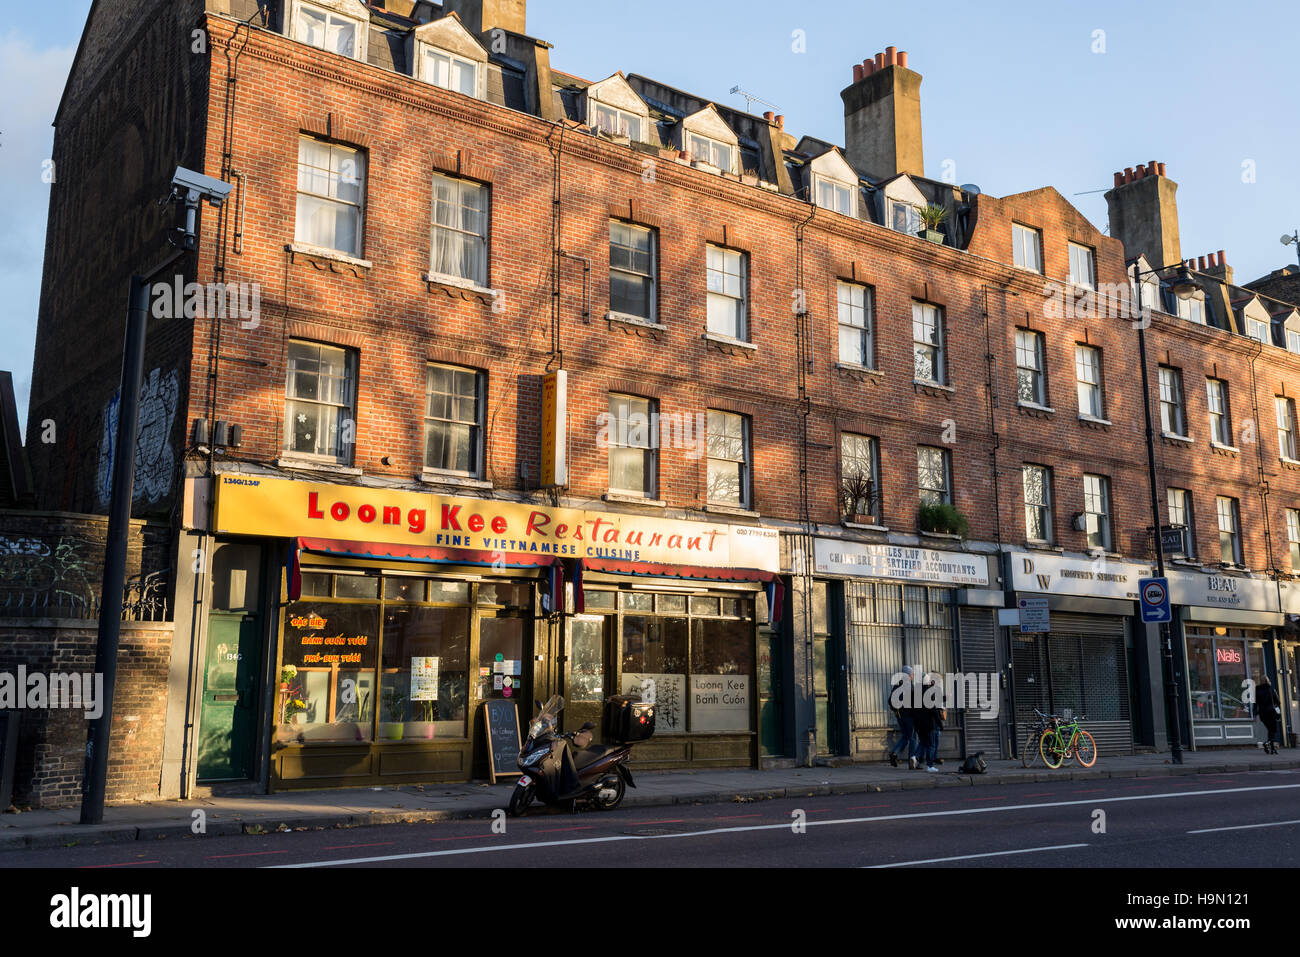 Loong Kee ist die nördlichste eine unglaubliche Reihe von vietnamesischen Cafés am Kingsland Road, Bethnal Green, London. Stockfoto